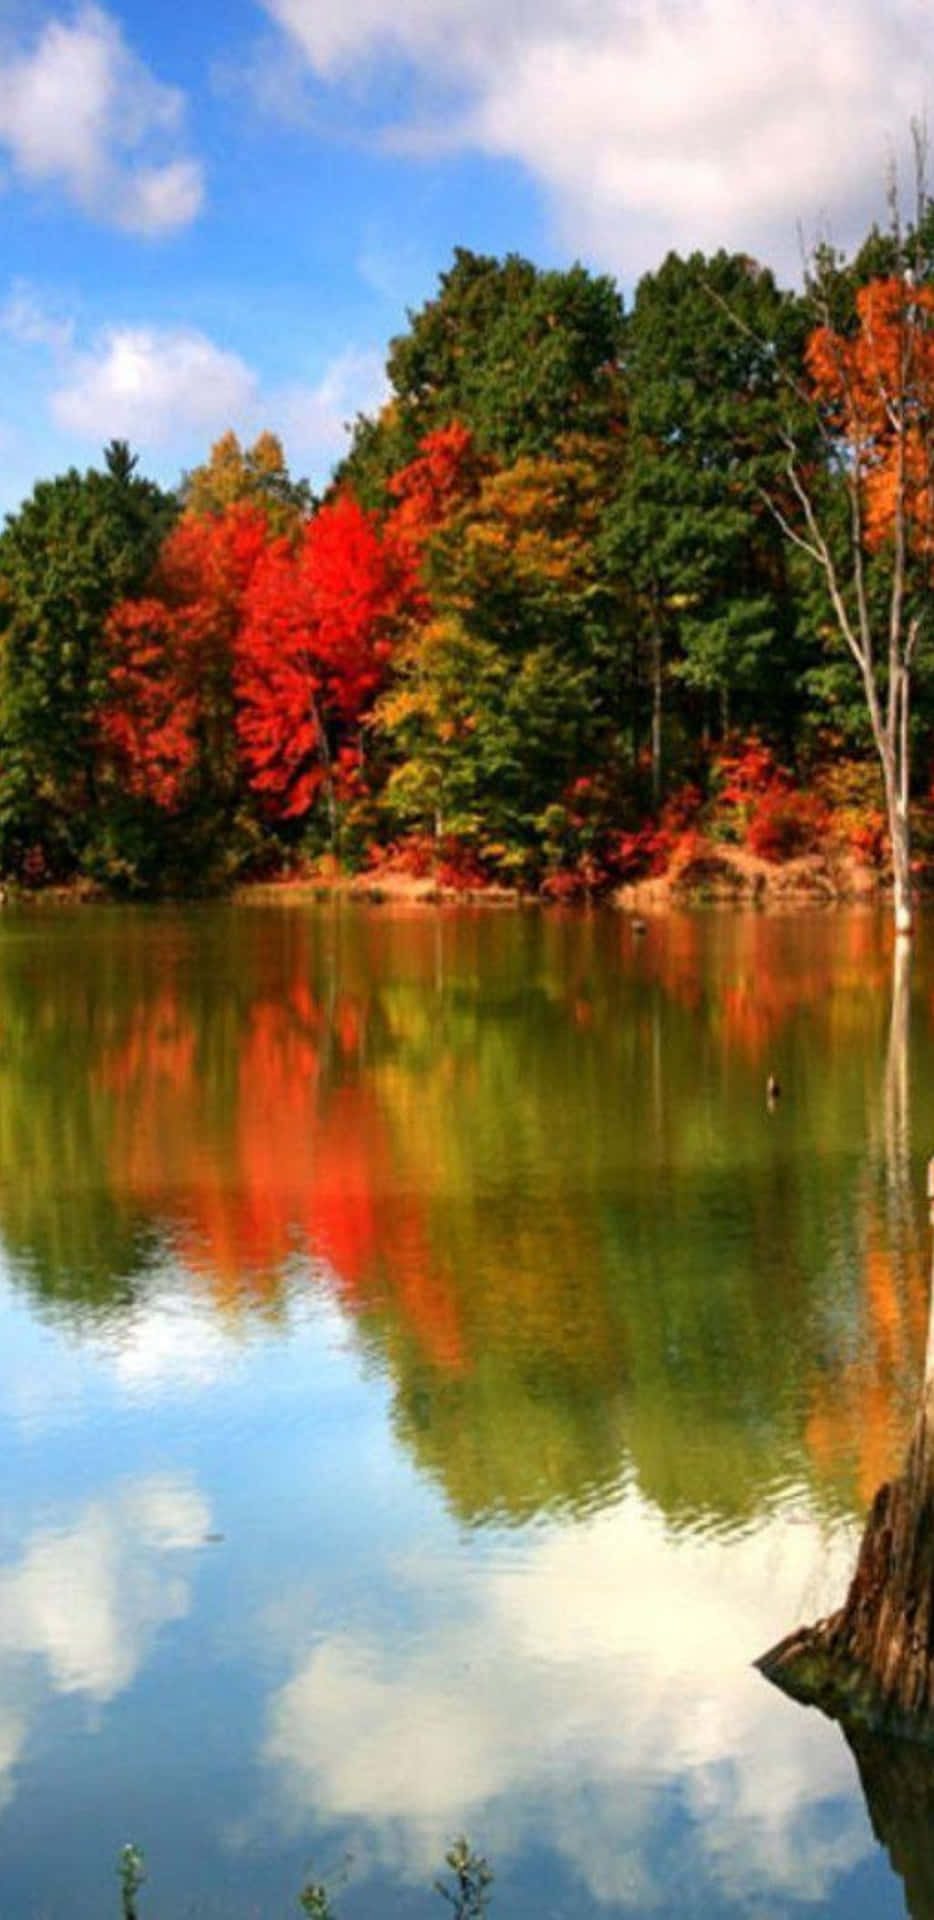 Pixel3xl Herbsthintergrund Mit Üppigen Bäumen Und Ruhigem Fluss